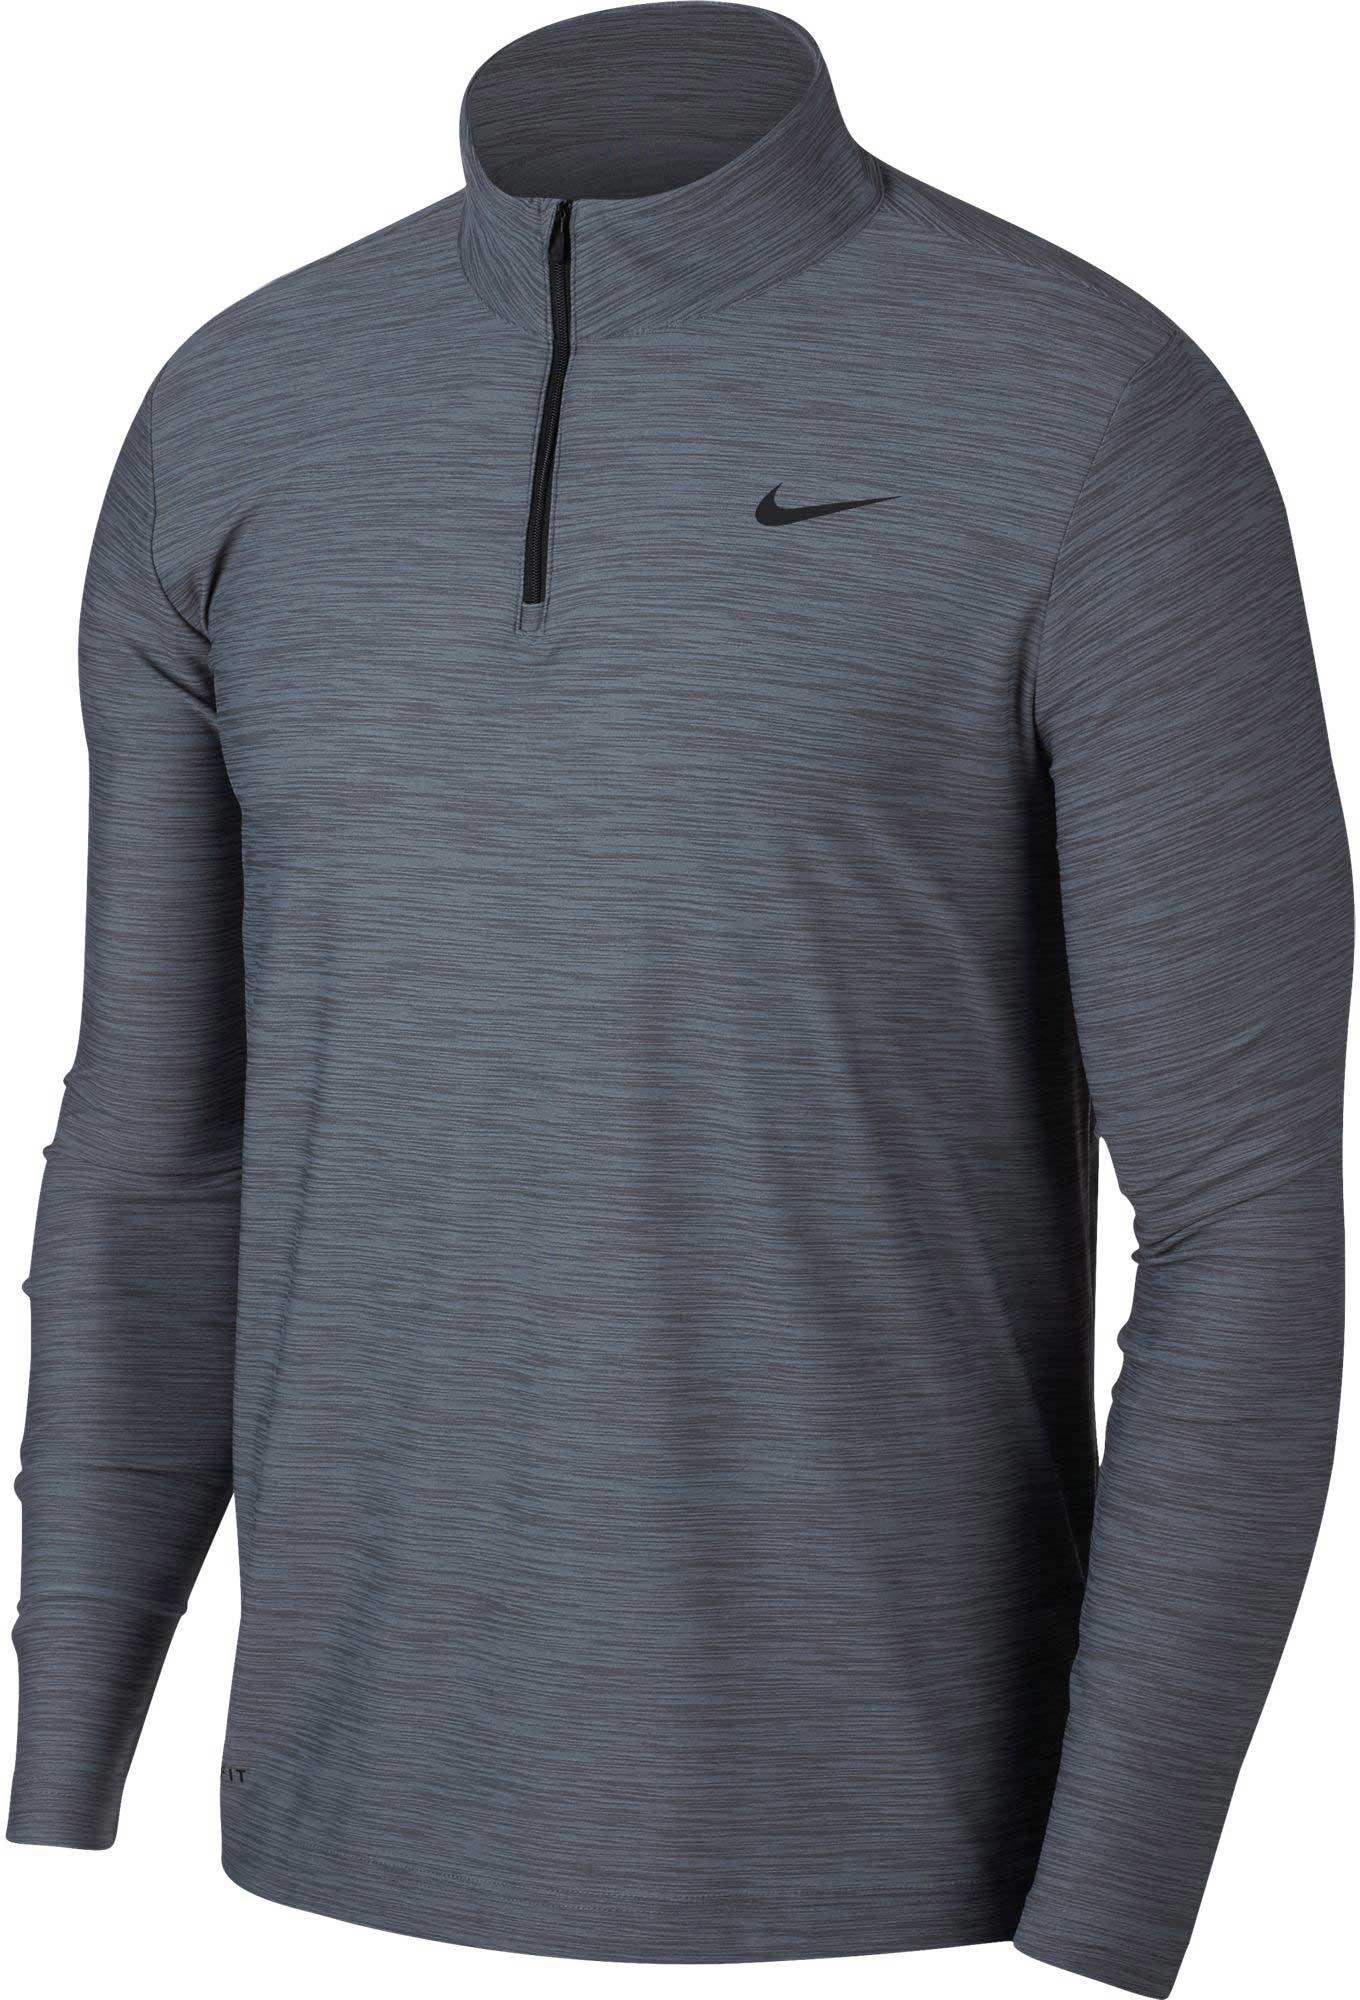 Lyst - Nike Reathe Dry Quarter Zip Long Sleeve Shirt in Gray for Men